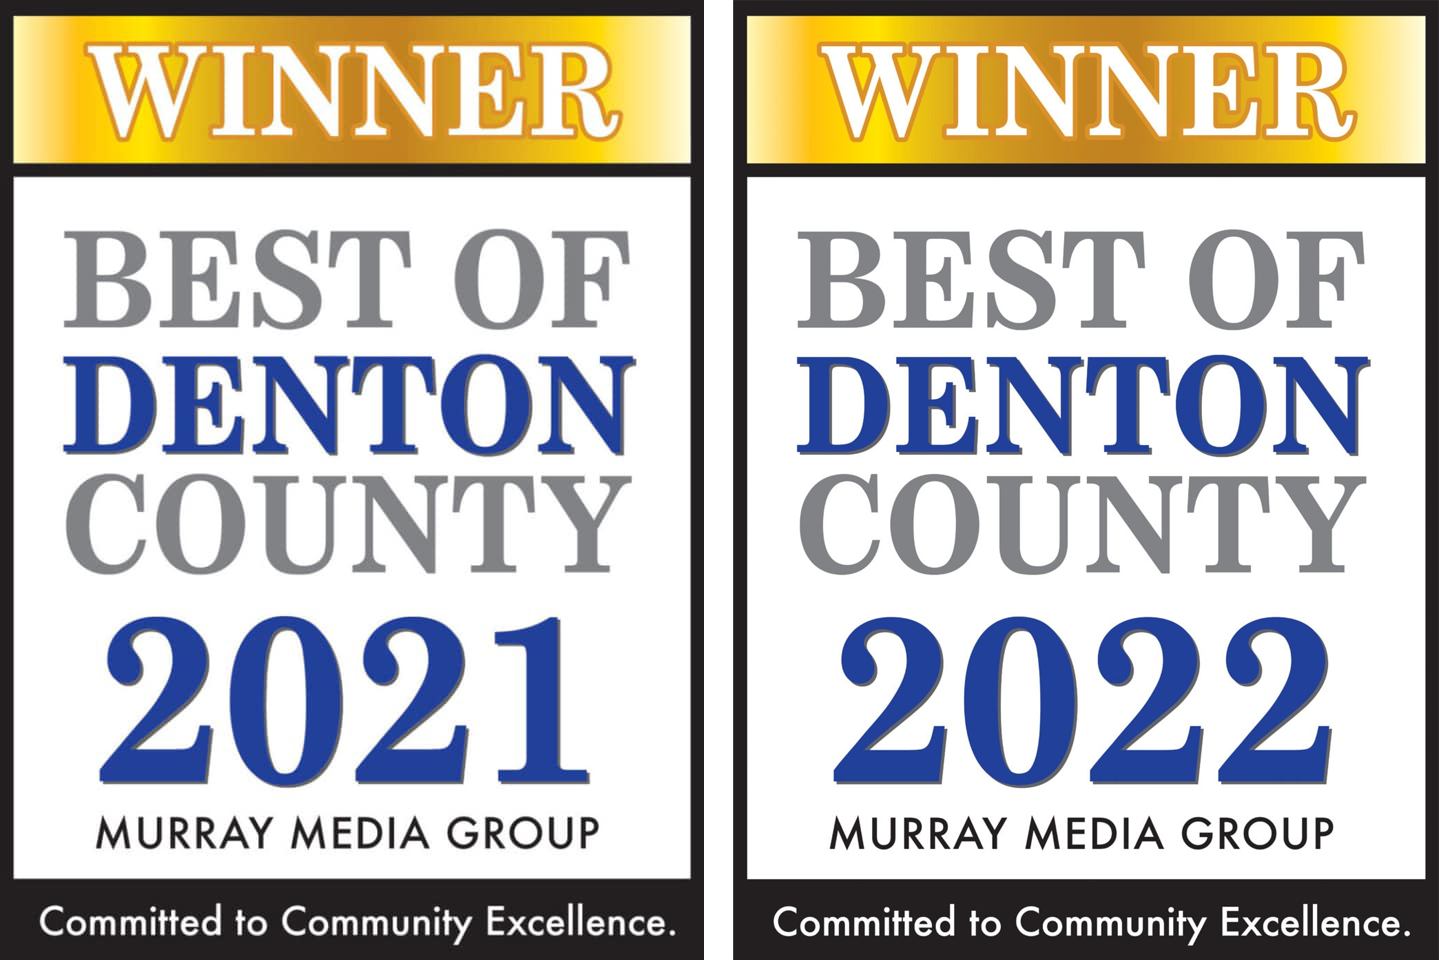 Best of Denton County 2021 Winner